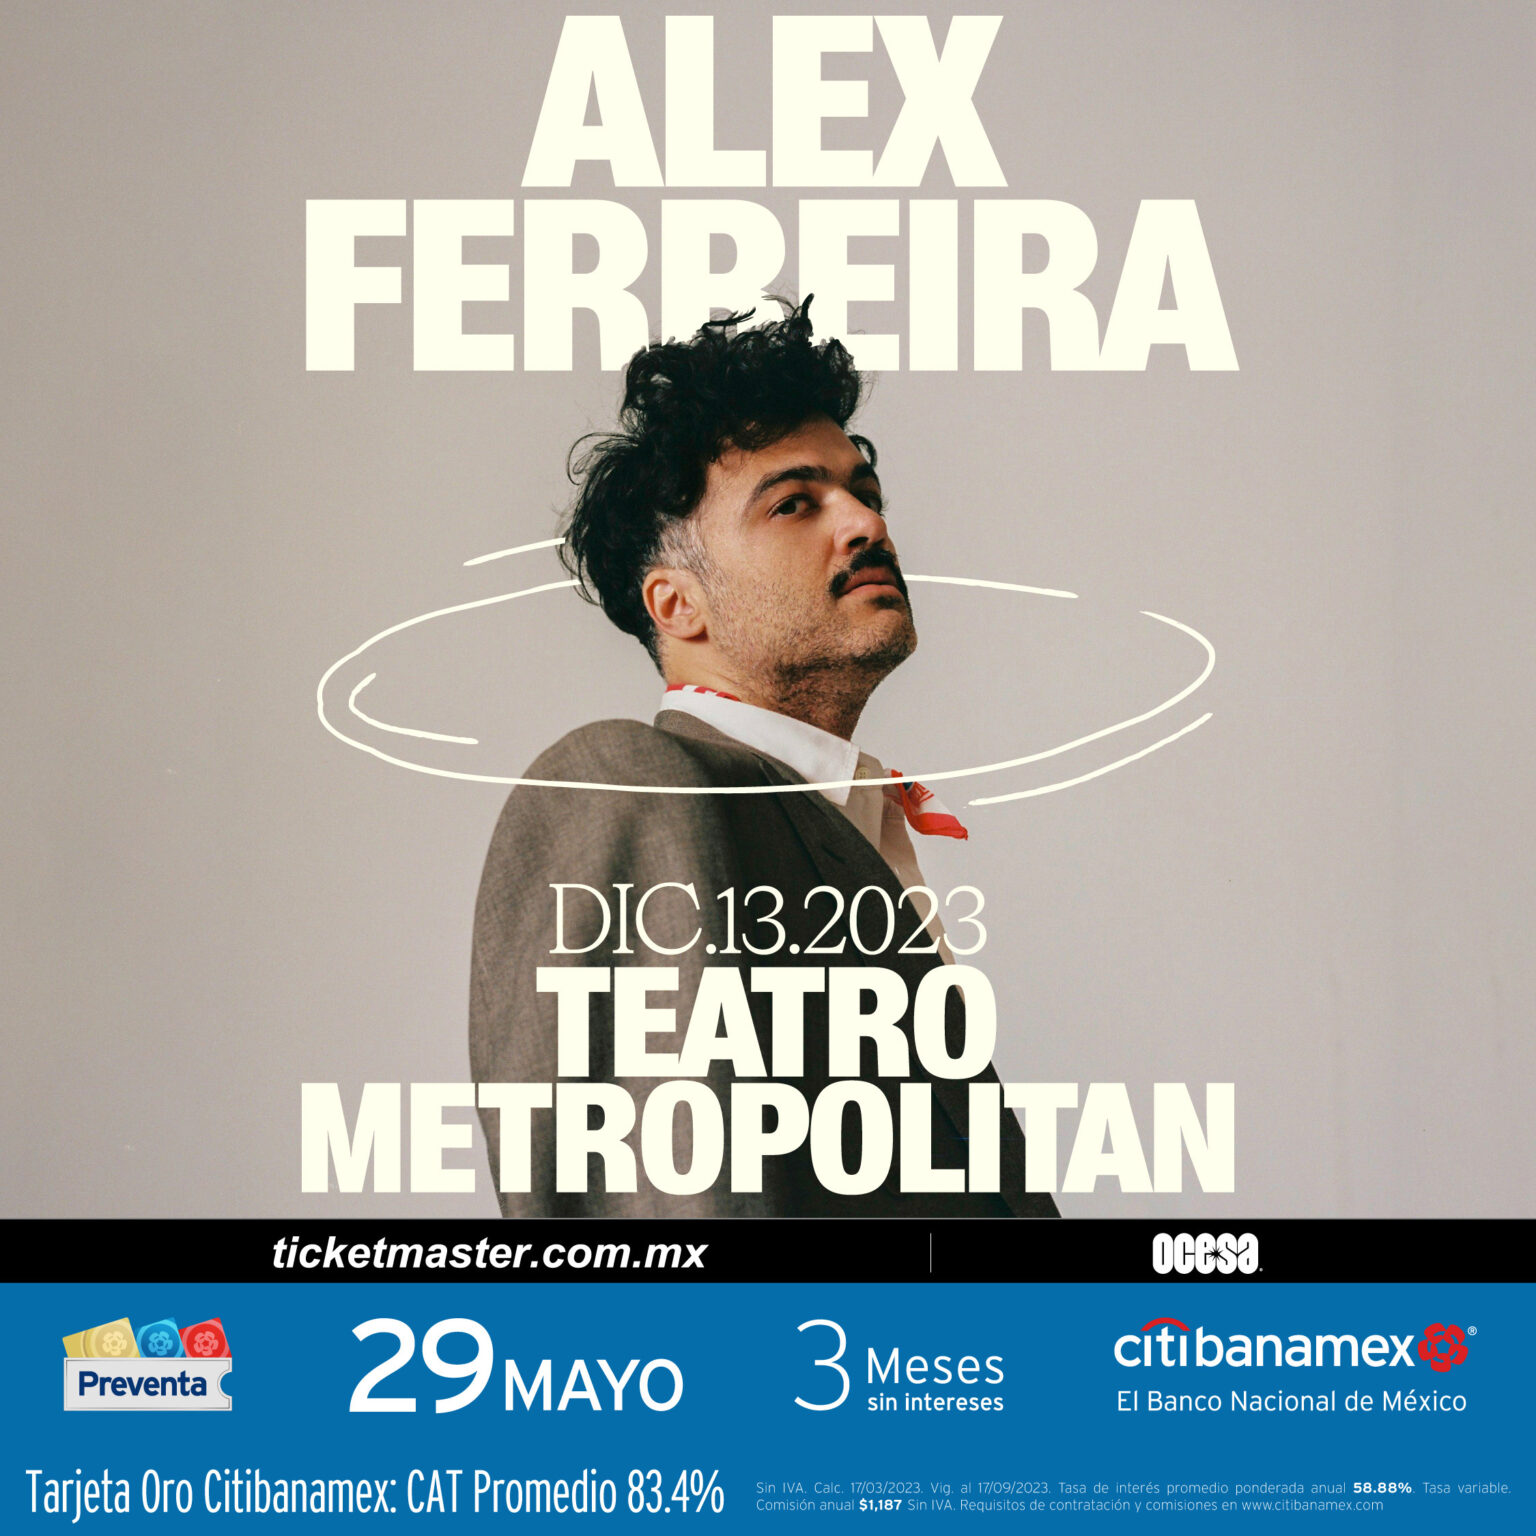 Alex Ferreira llegará al Teatro Metropólitan